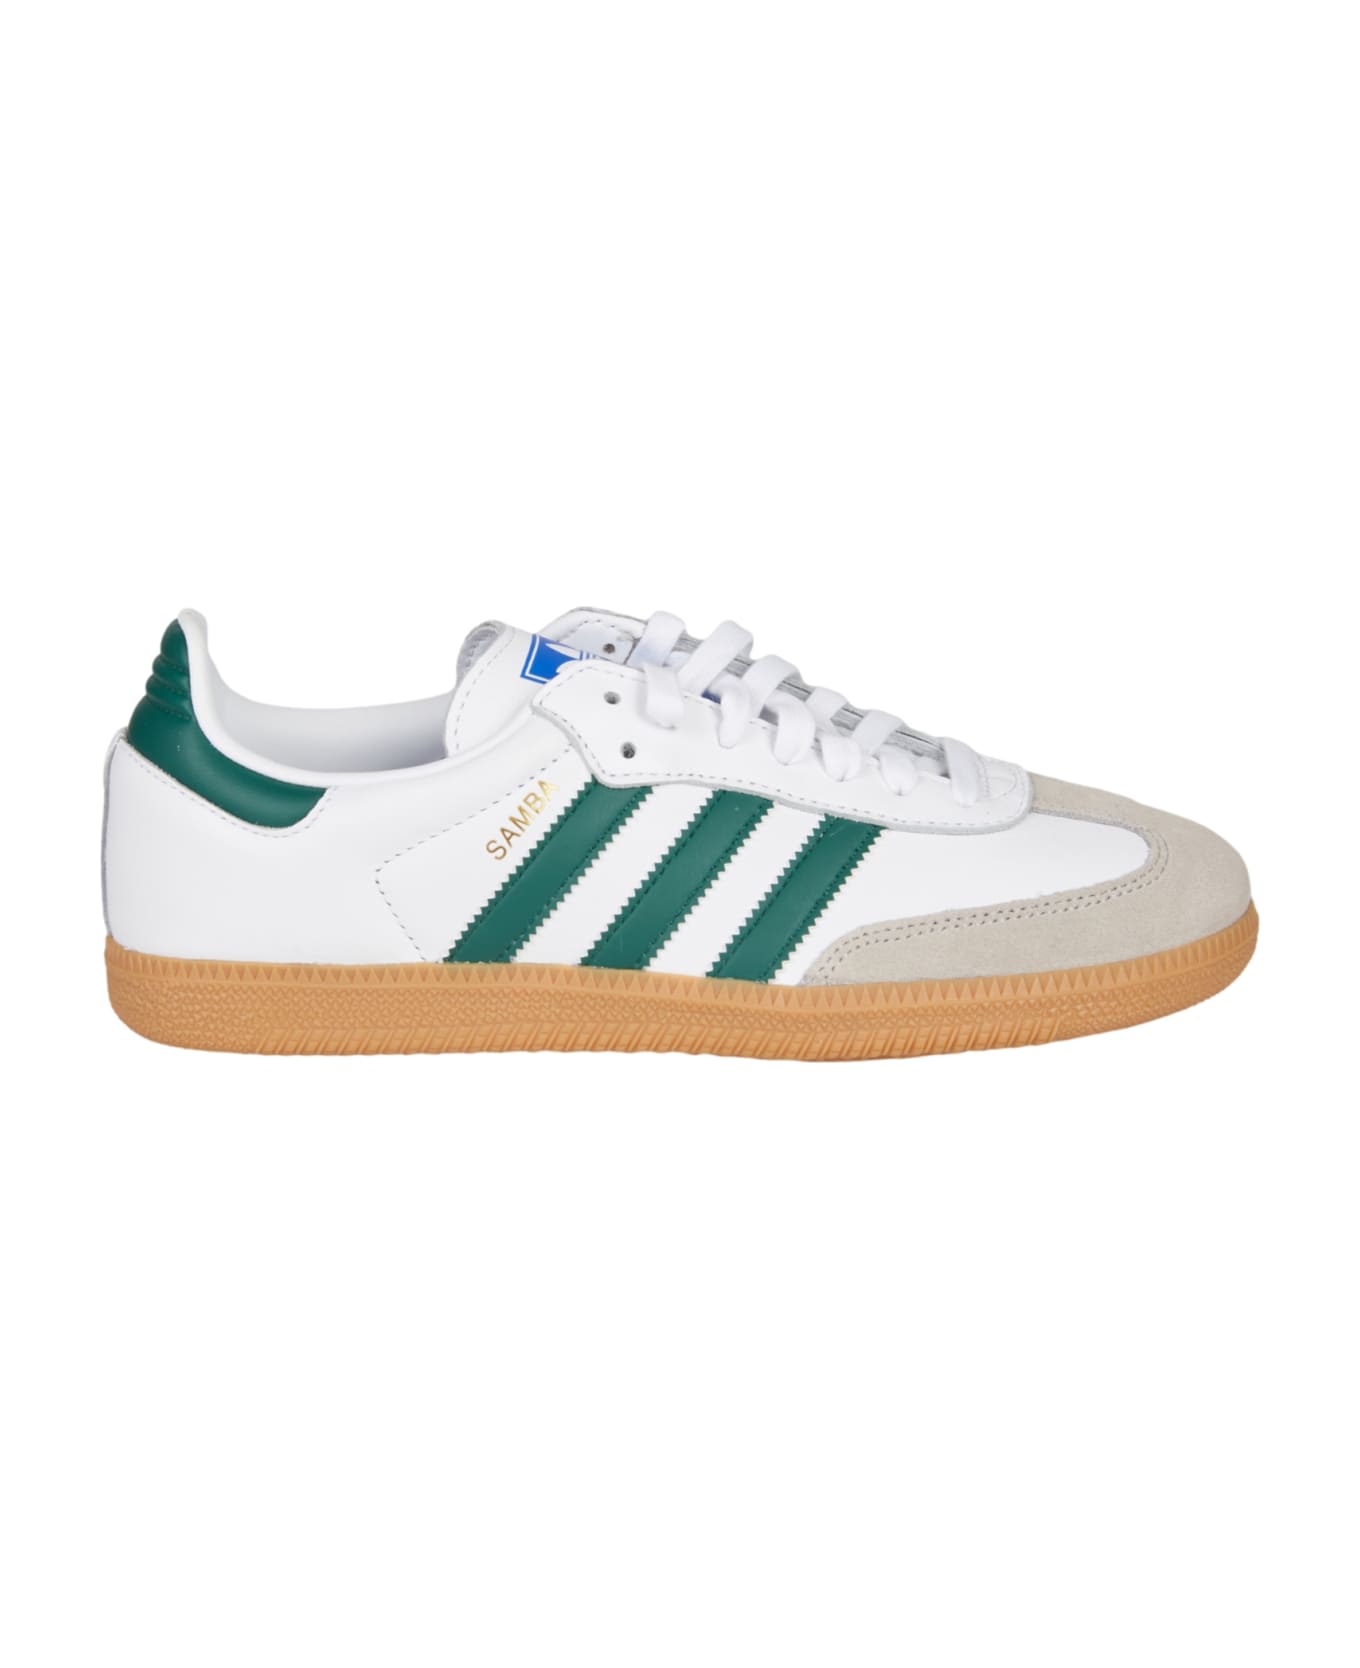 Adidas Samba Og Sneakers - White/Green スニーカー